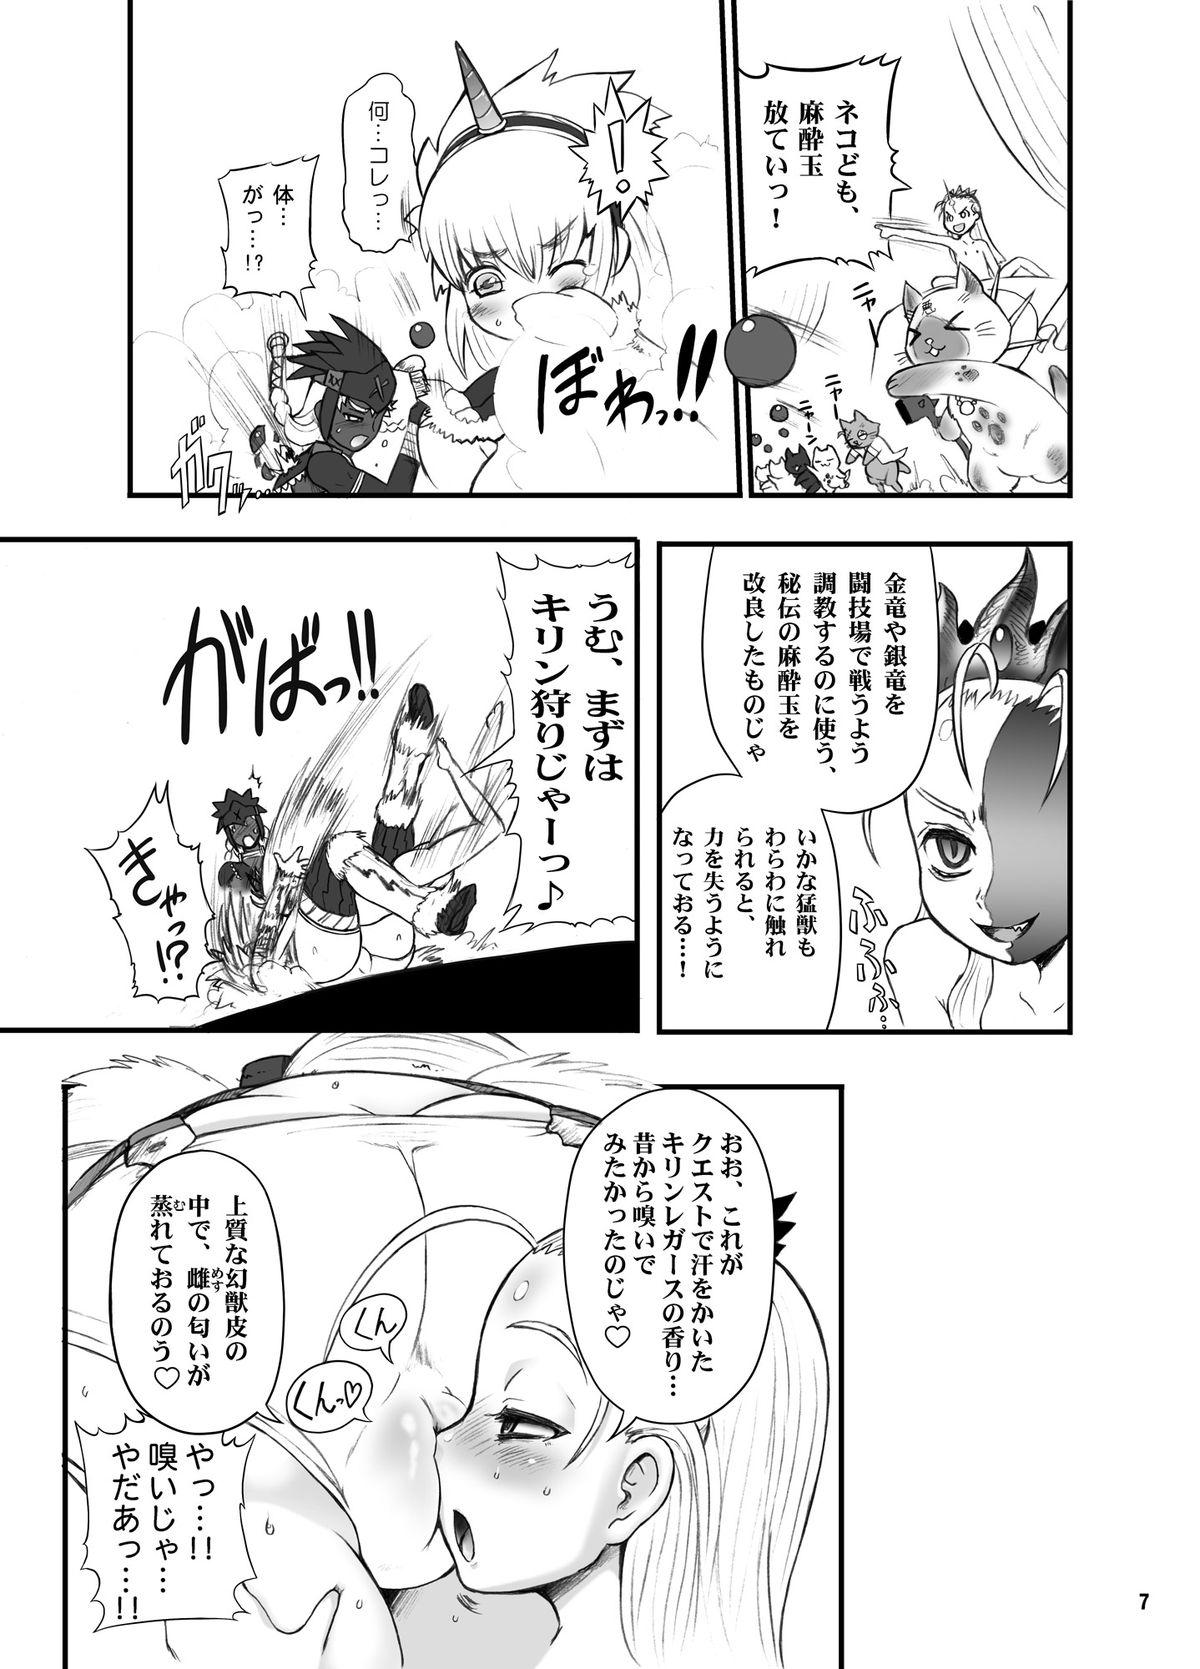 Amateurporn Wagamama Oujo no Hunter dai Renzoku Shuryou! - Monster hunter Milk - Page 7